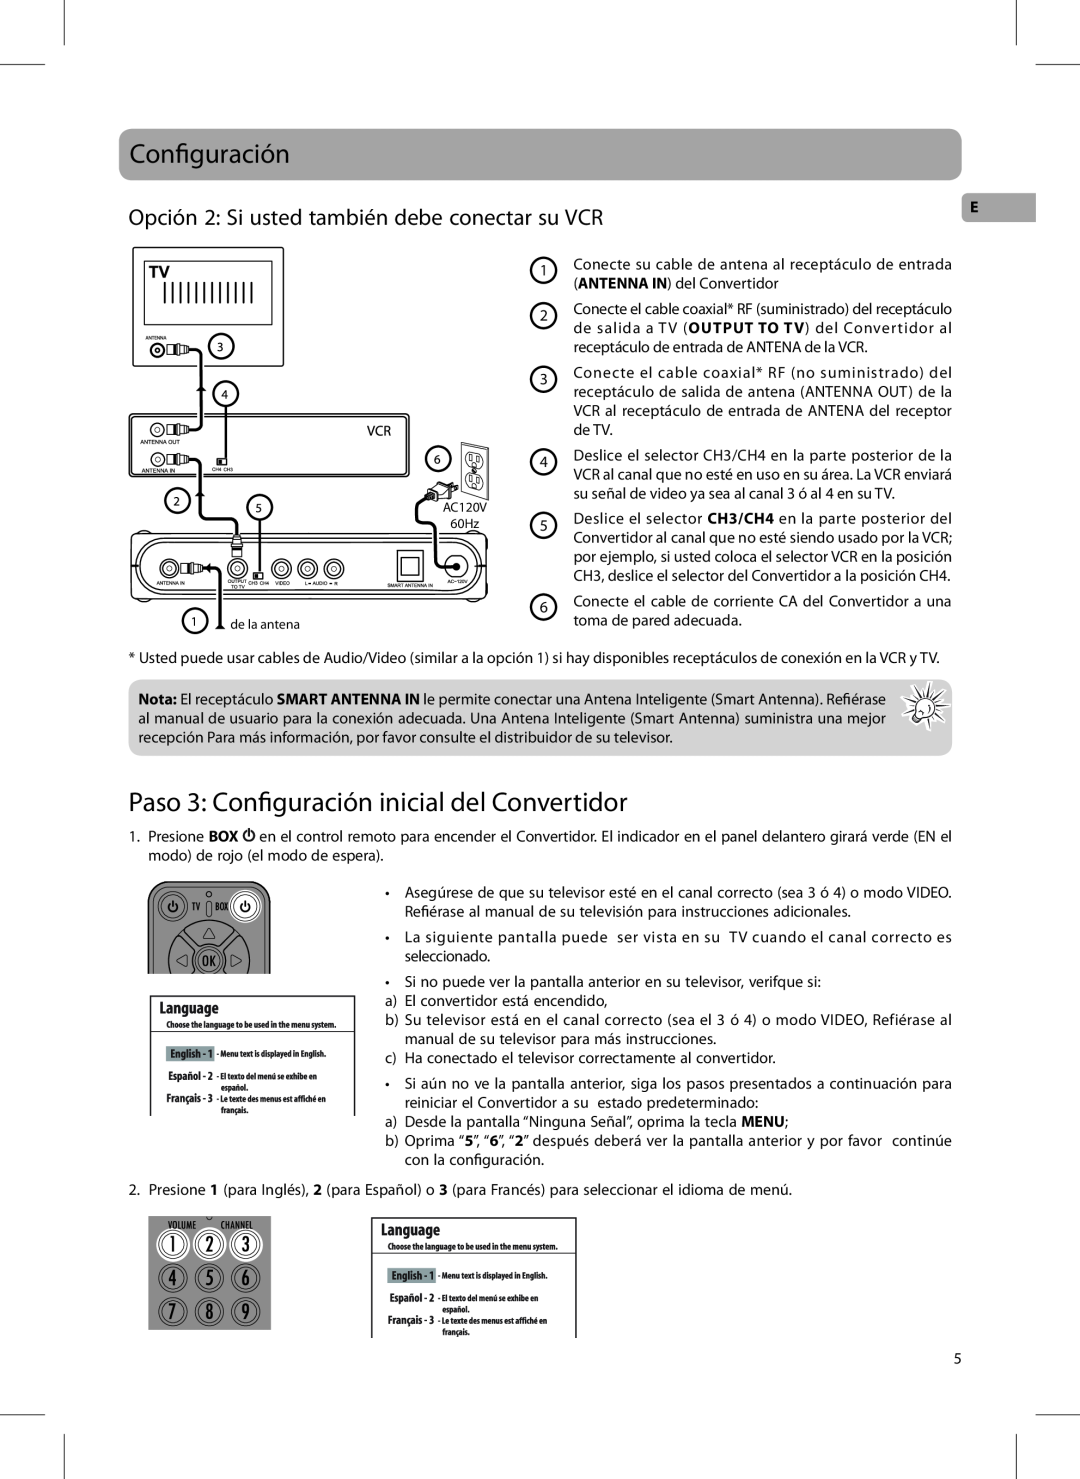 RCA DTA800B1L user manual Paso 3 Configuración inicial del Convertidor, Opción 2 Si usted también debe conectar su VCR 